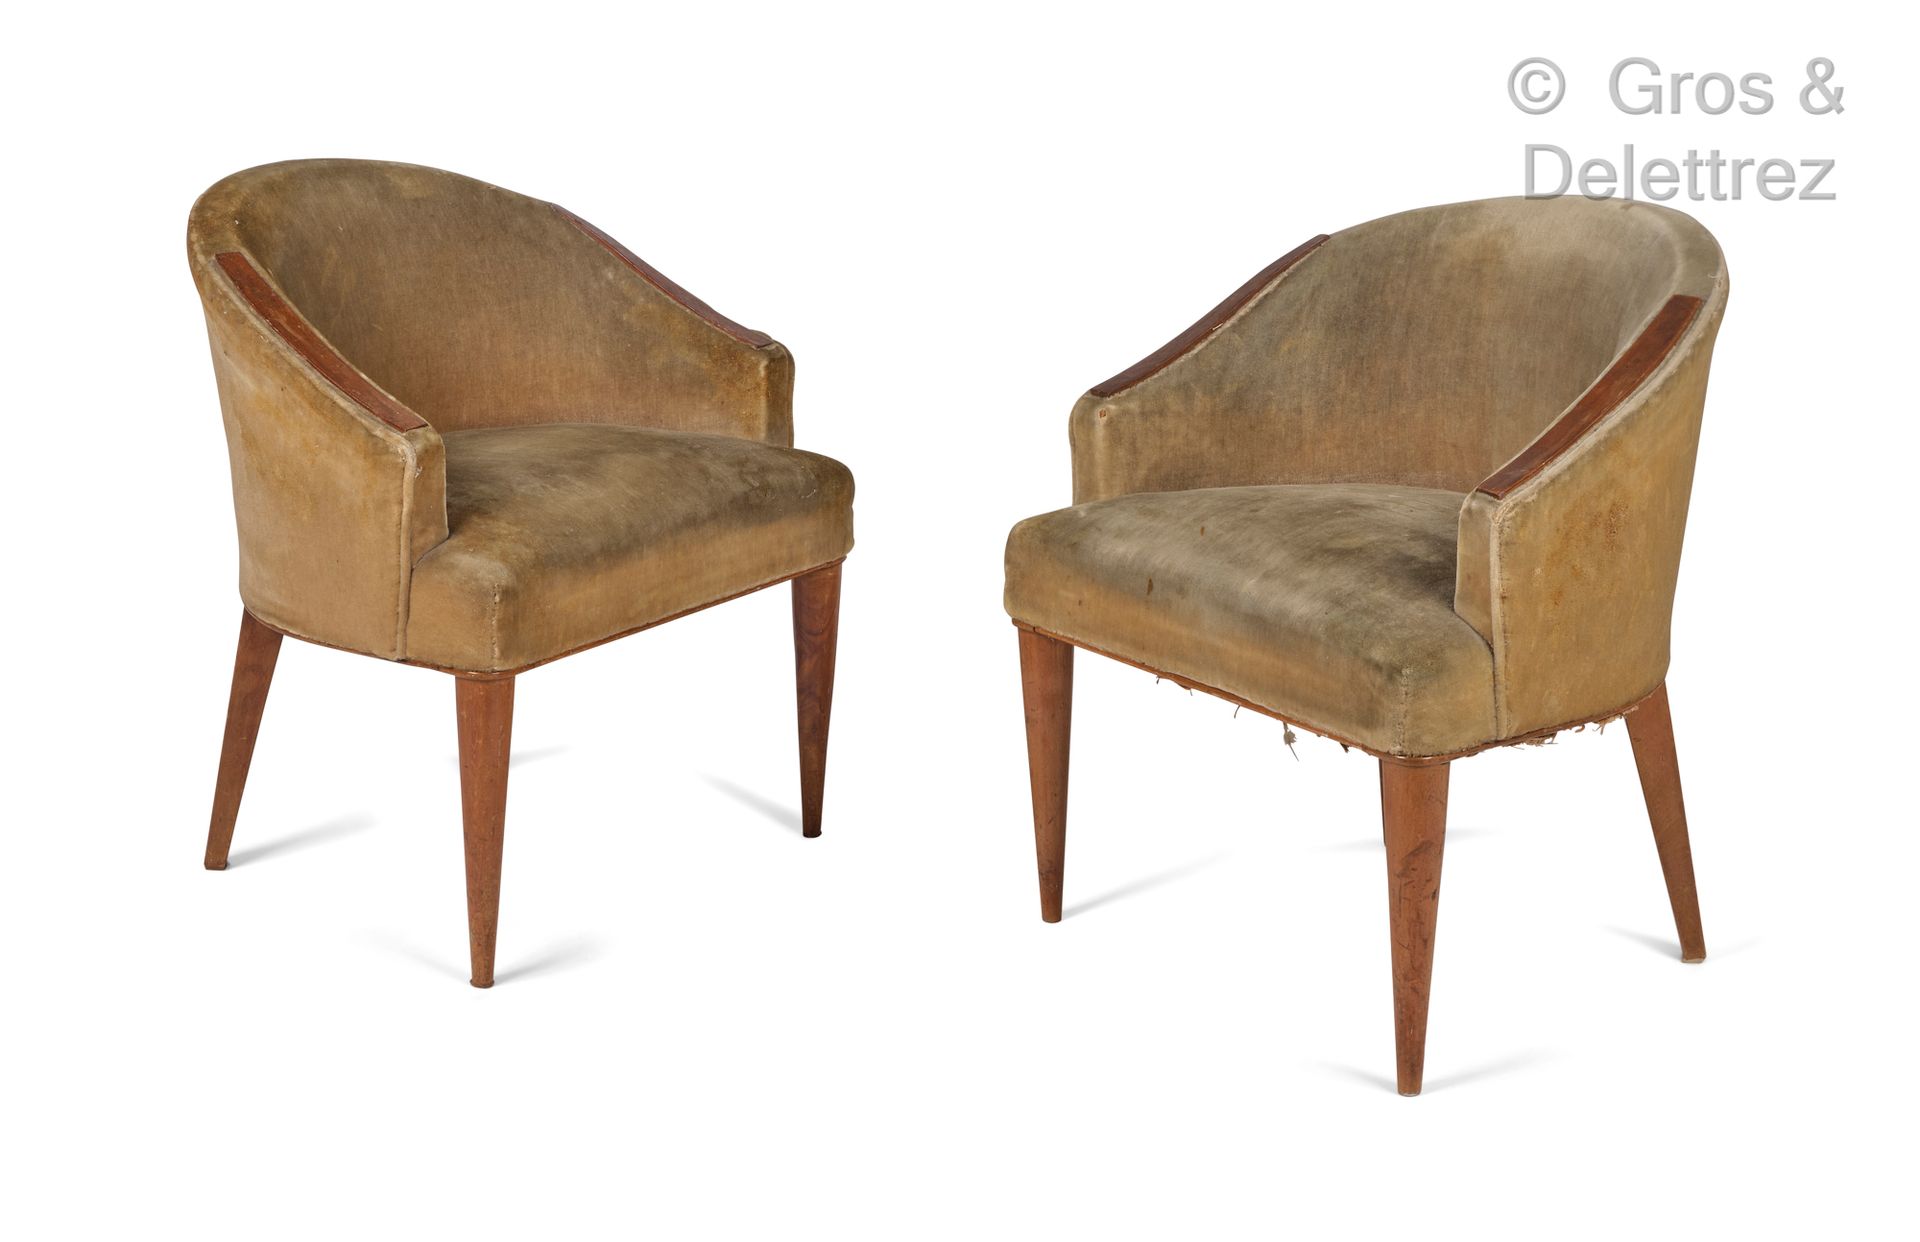 TRAVAIL FRANCAIS 1930-1950 一对染色山毛榉的低扶手椅。

椅垫上覆盖着绿色天鹅绒。

高：72 / 宽：54 / 深：56 厘米